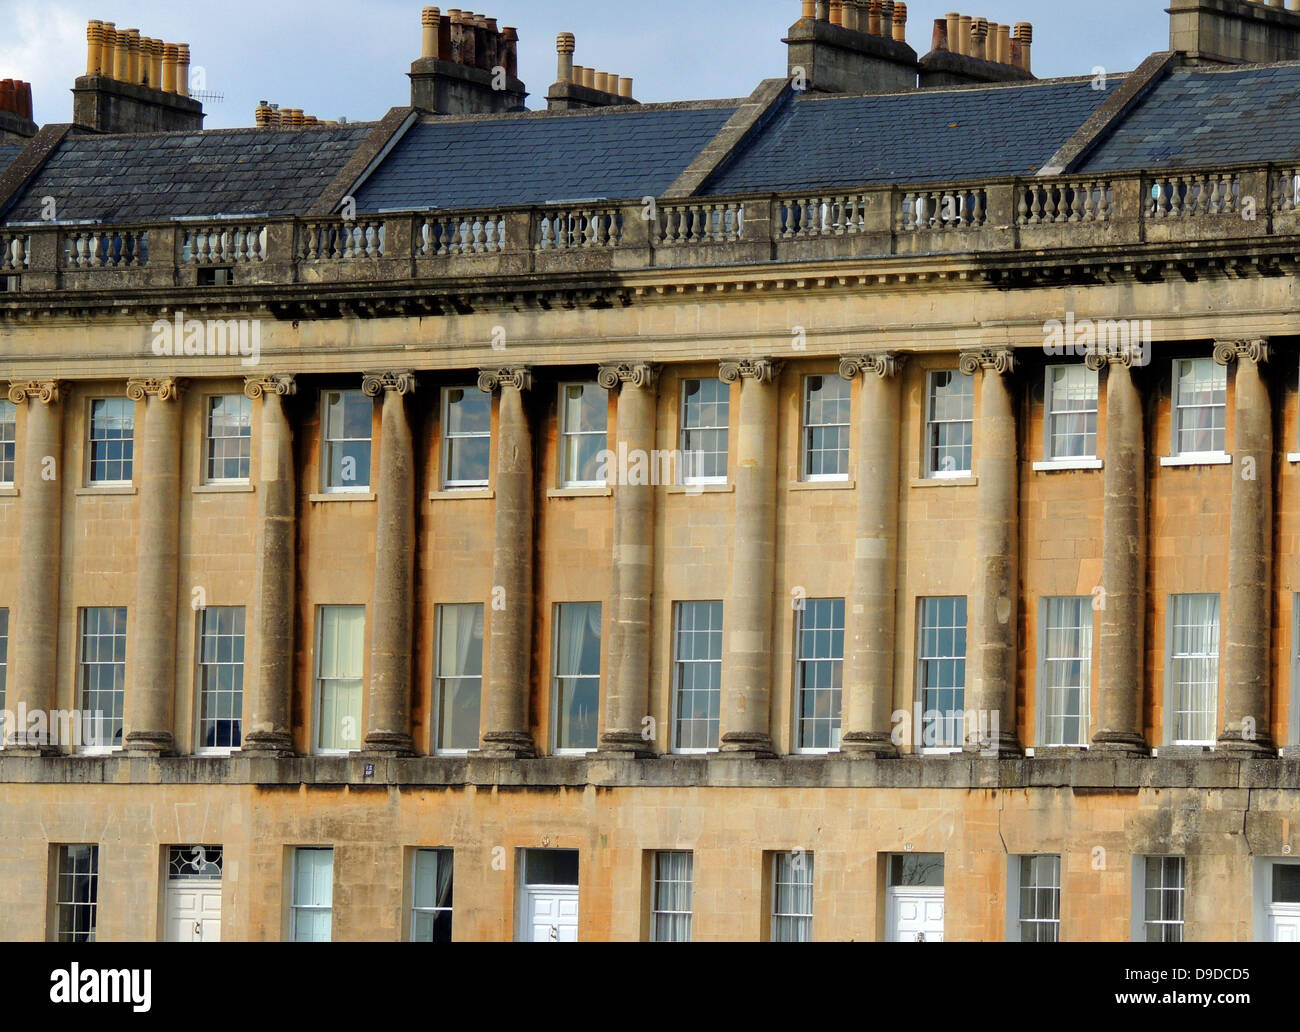 El Royal Crescent es una calle de 30 casas adosadas establecidos en una media luna de barrido en la ciudad de Bath, Inglaterra. Diseñado por el arquitecto John Wood el joven y construida entre 1767 y 1774, es uno de los mayores ejemplos de la arquitectura georgiana que se encuentran en el Reino Unido y es un edificio catalogado de grado I Foto de stock